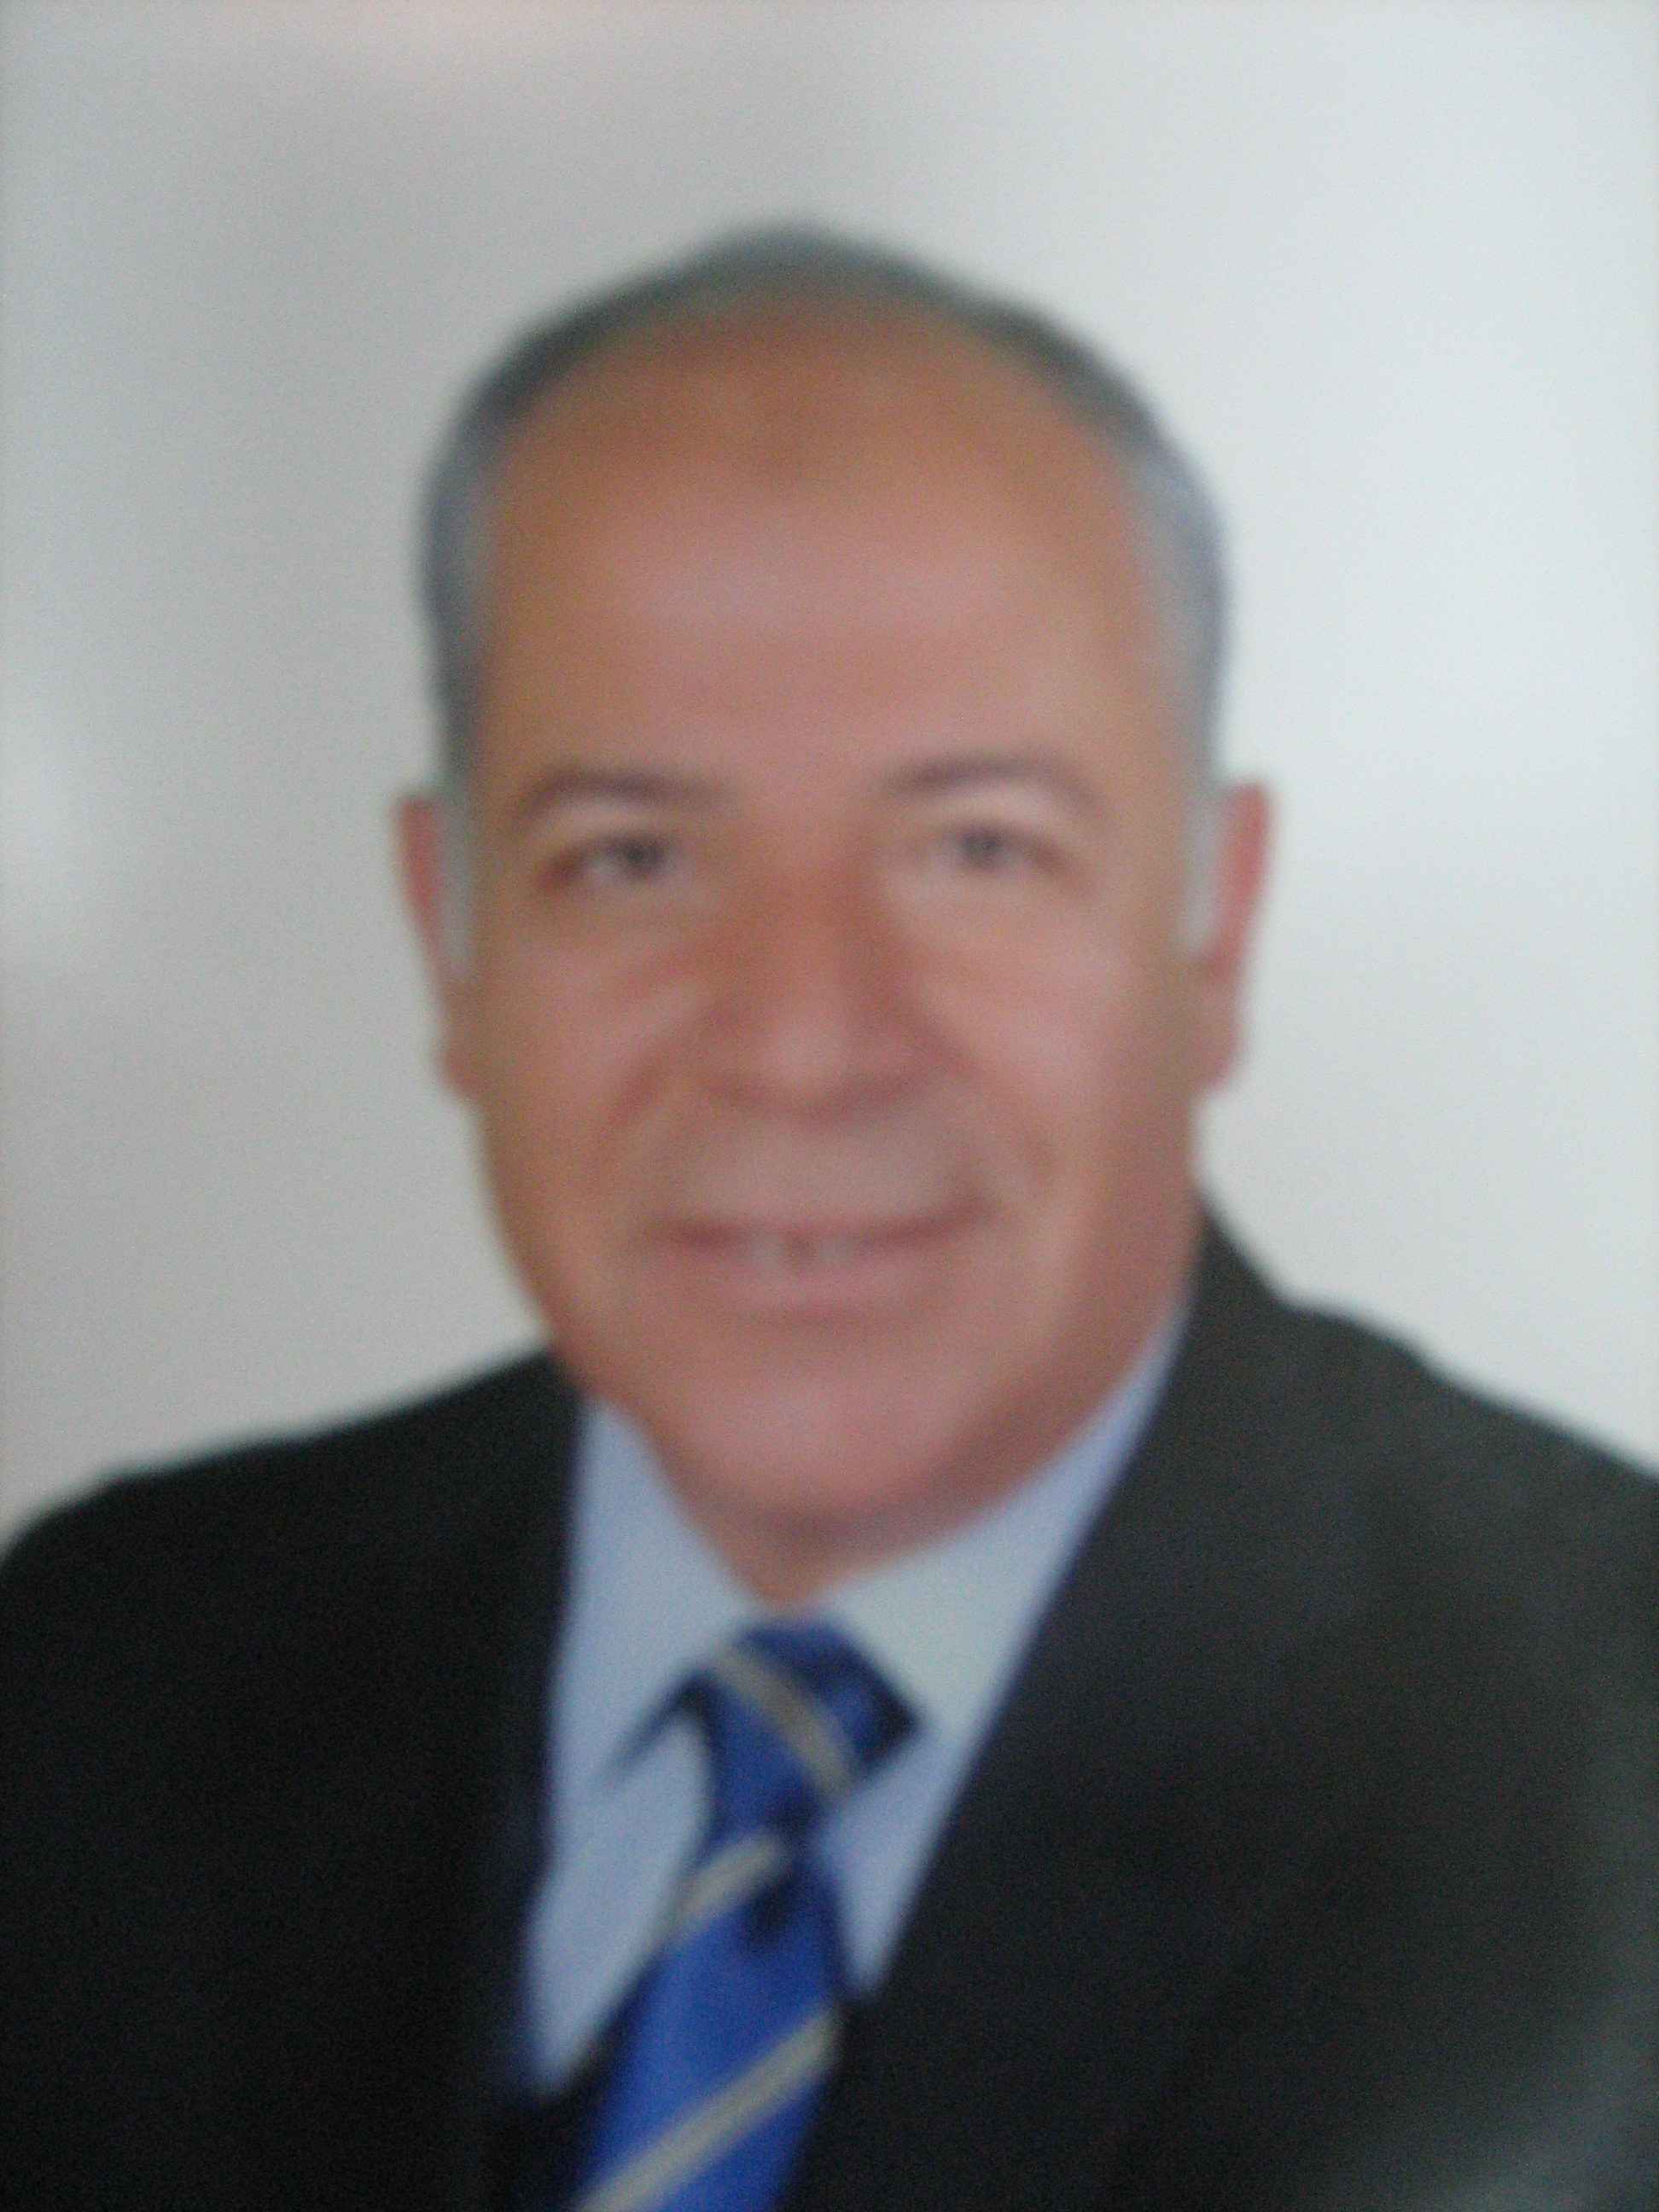 Mohamed Attia Mohamed Metwally